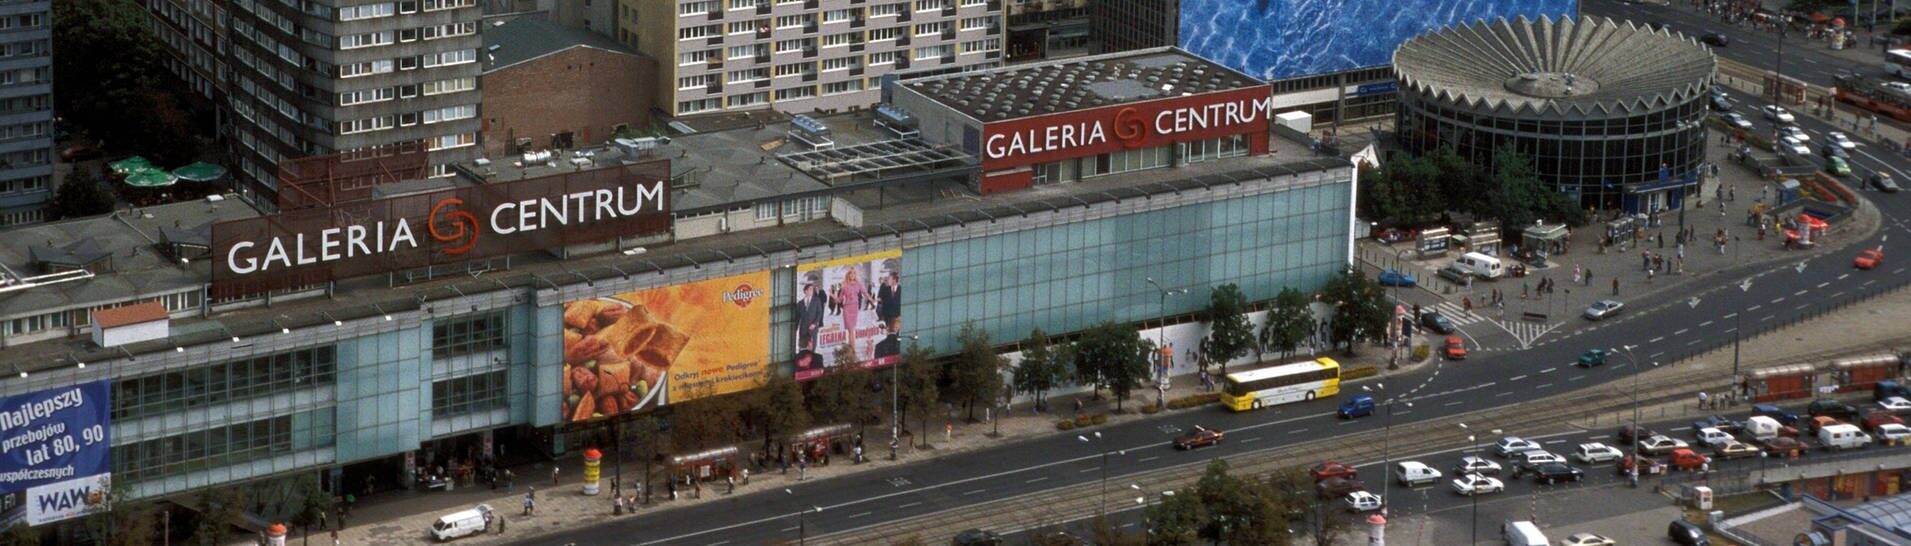 Ausblick von einer Aussichtsplattform des Kulturpalasts auf das Kaufhaus Galeria Centrum in Warschau.